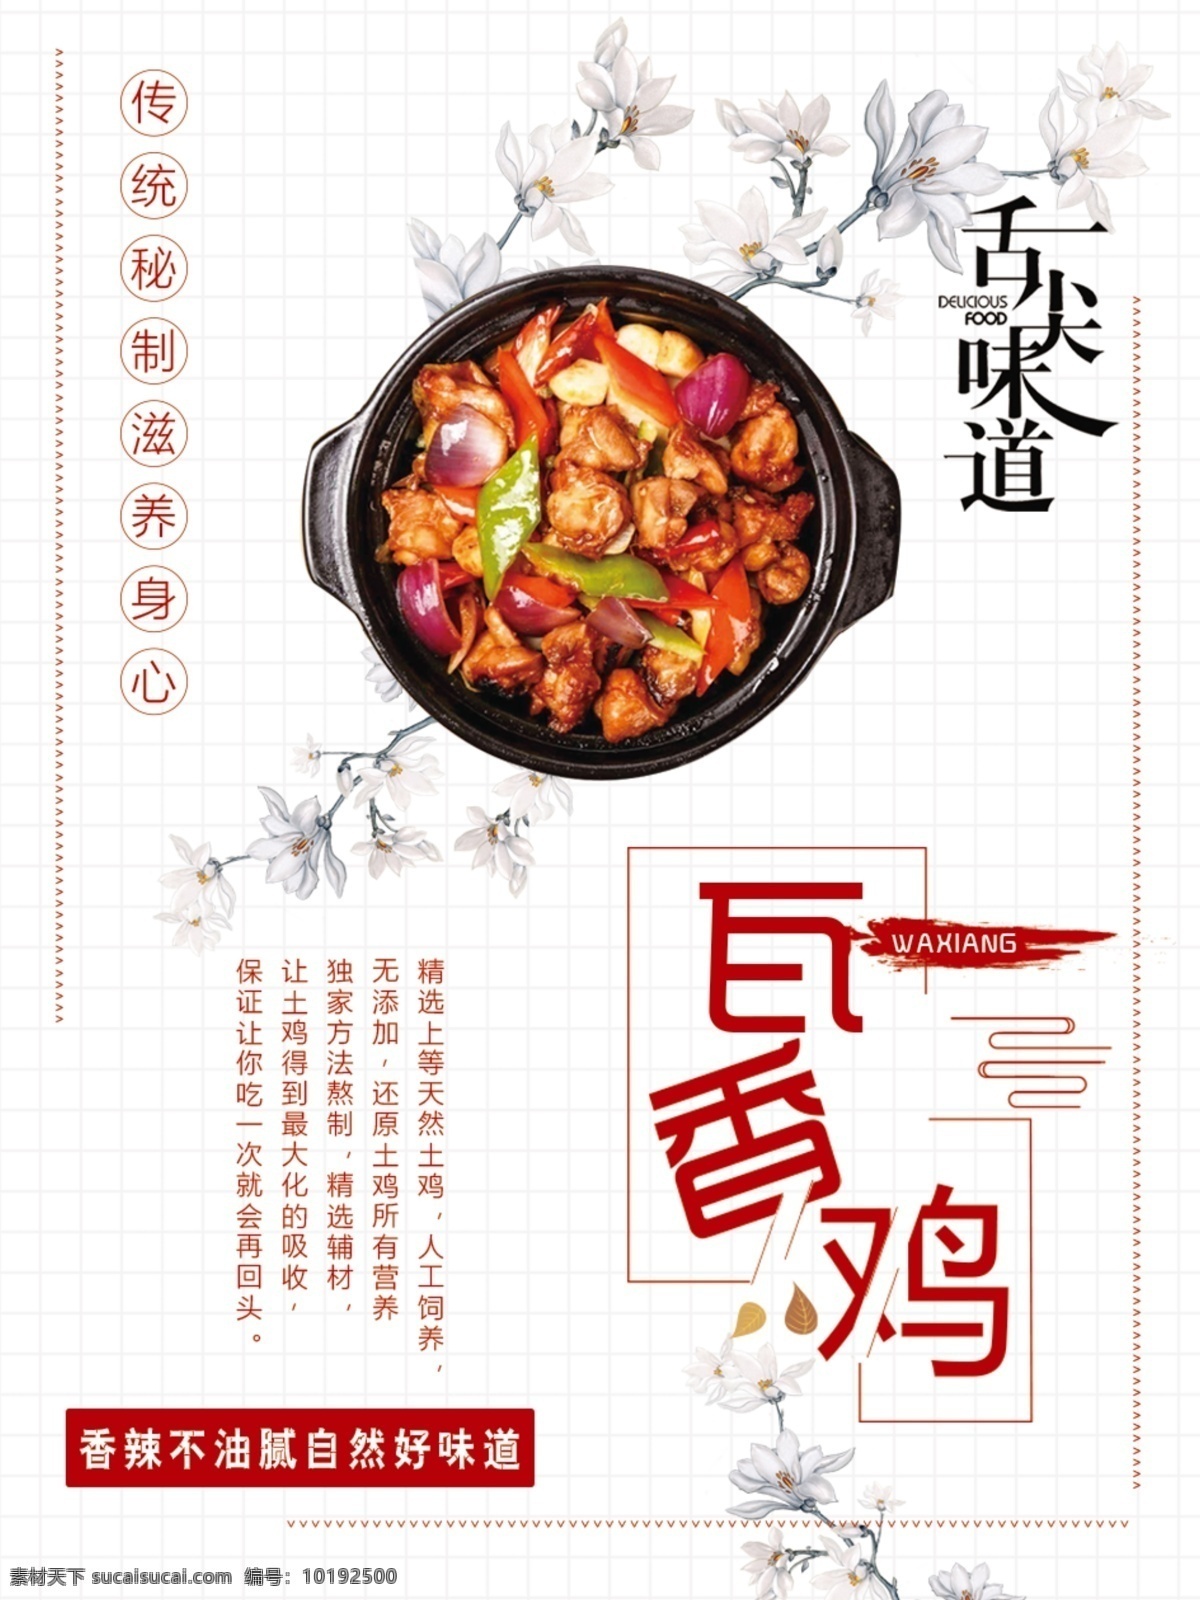 瓦香鸡 美食 鸡肉 中国风 特色菜